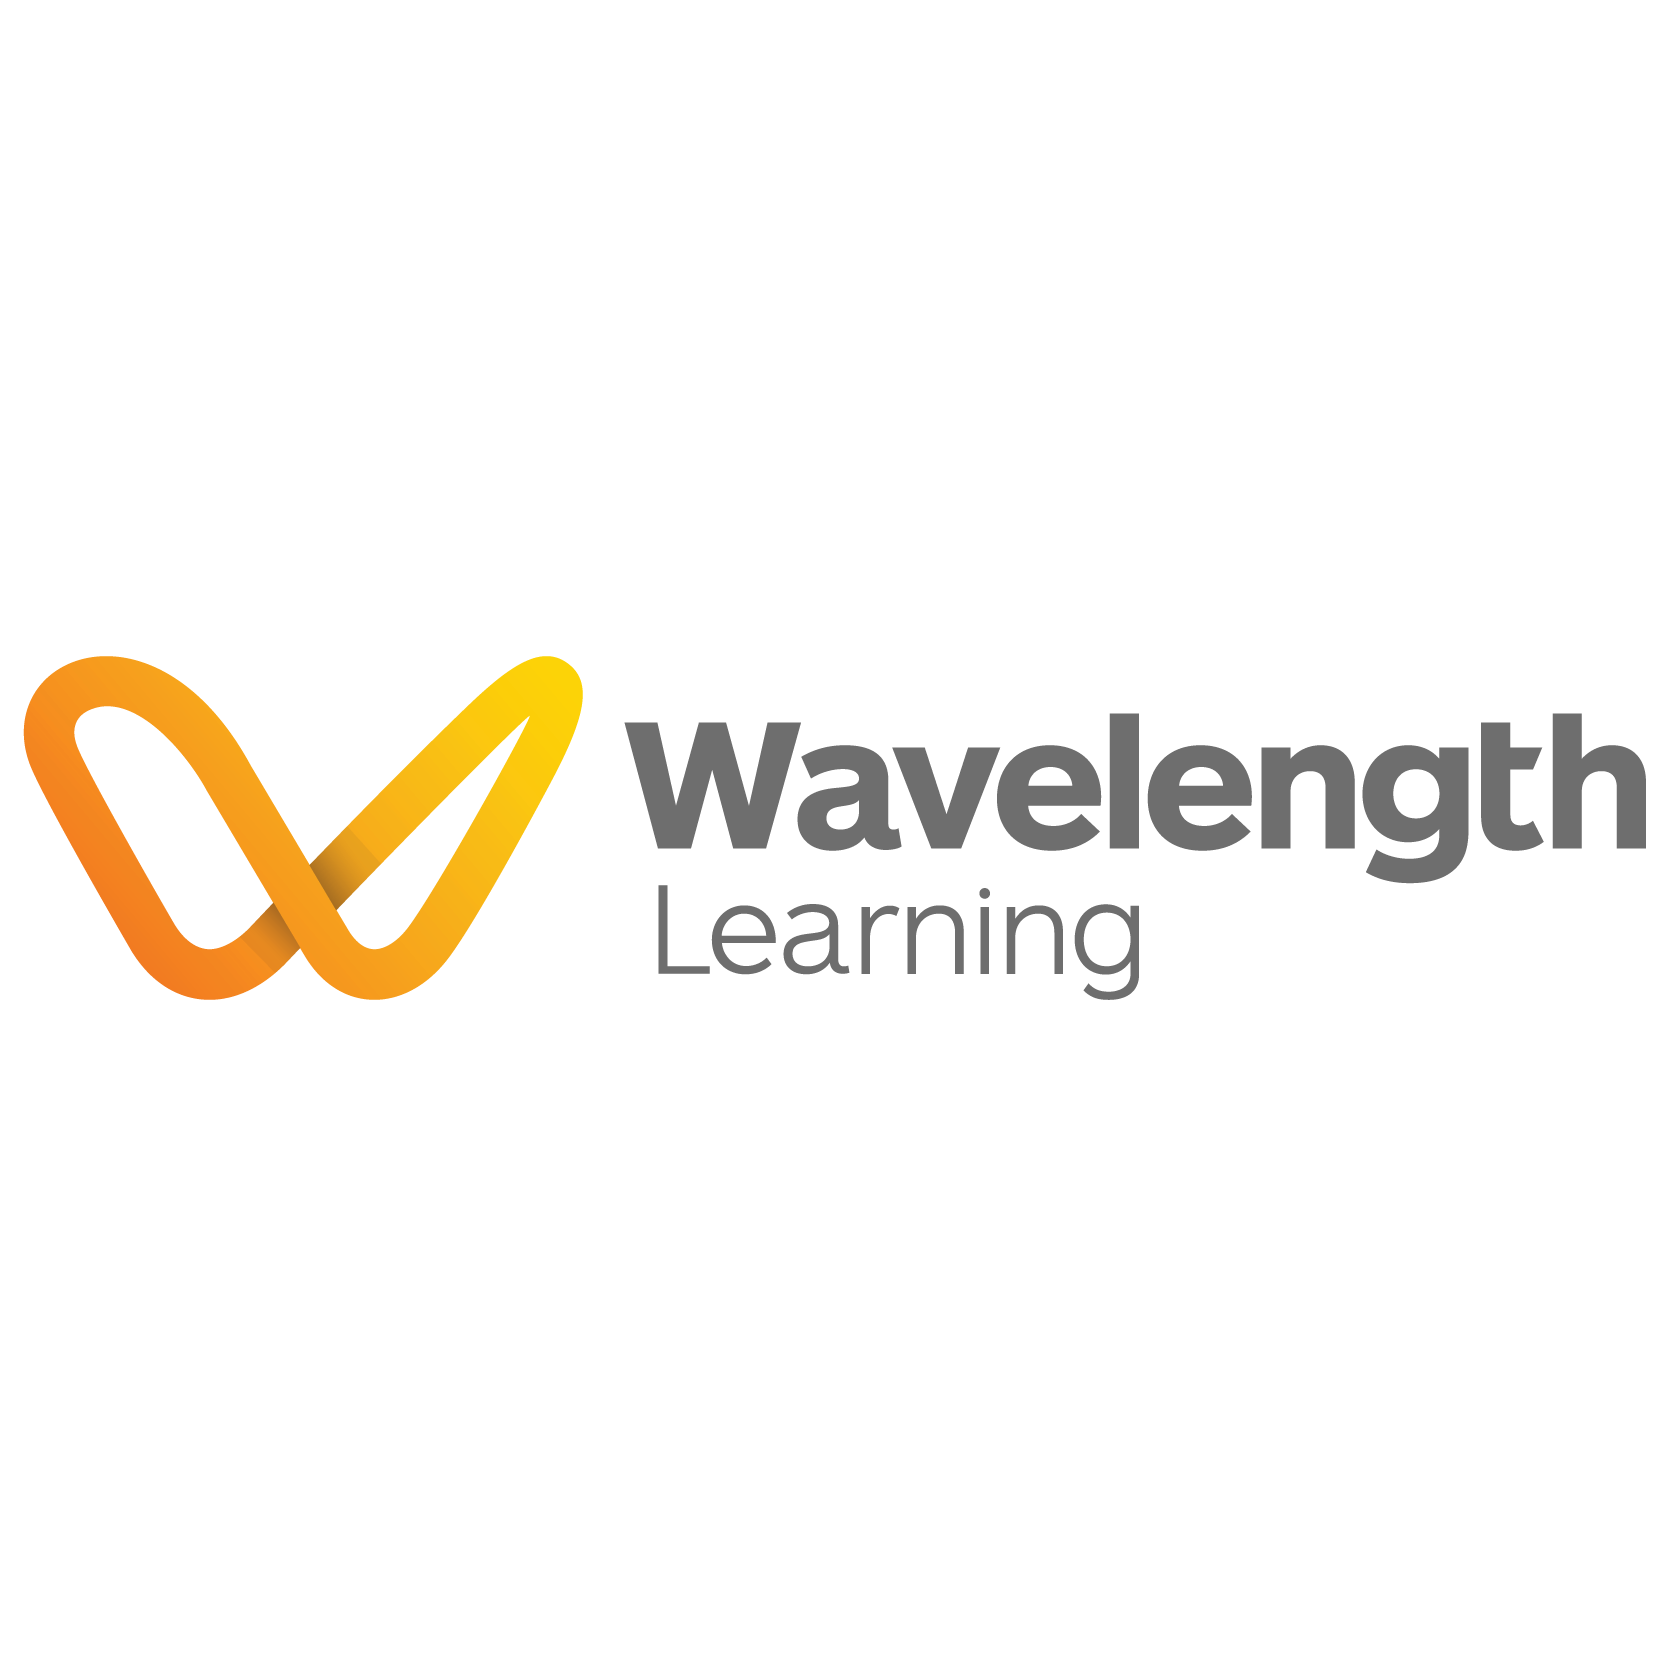 Wavelength Learning Logo